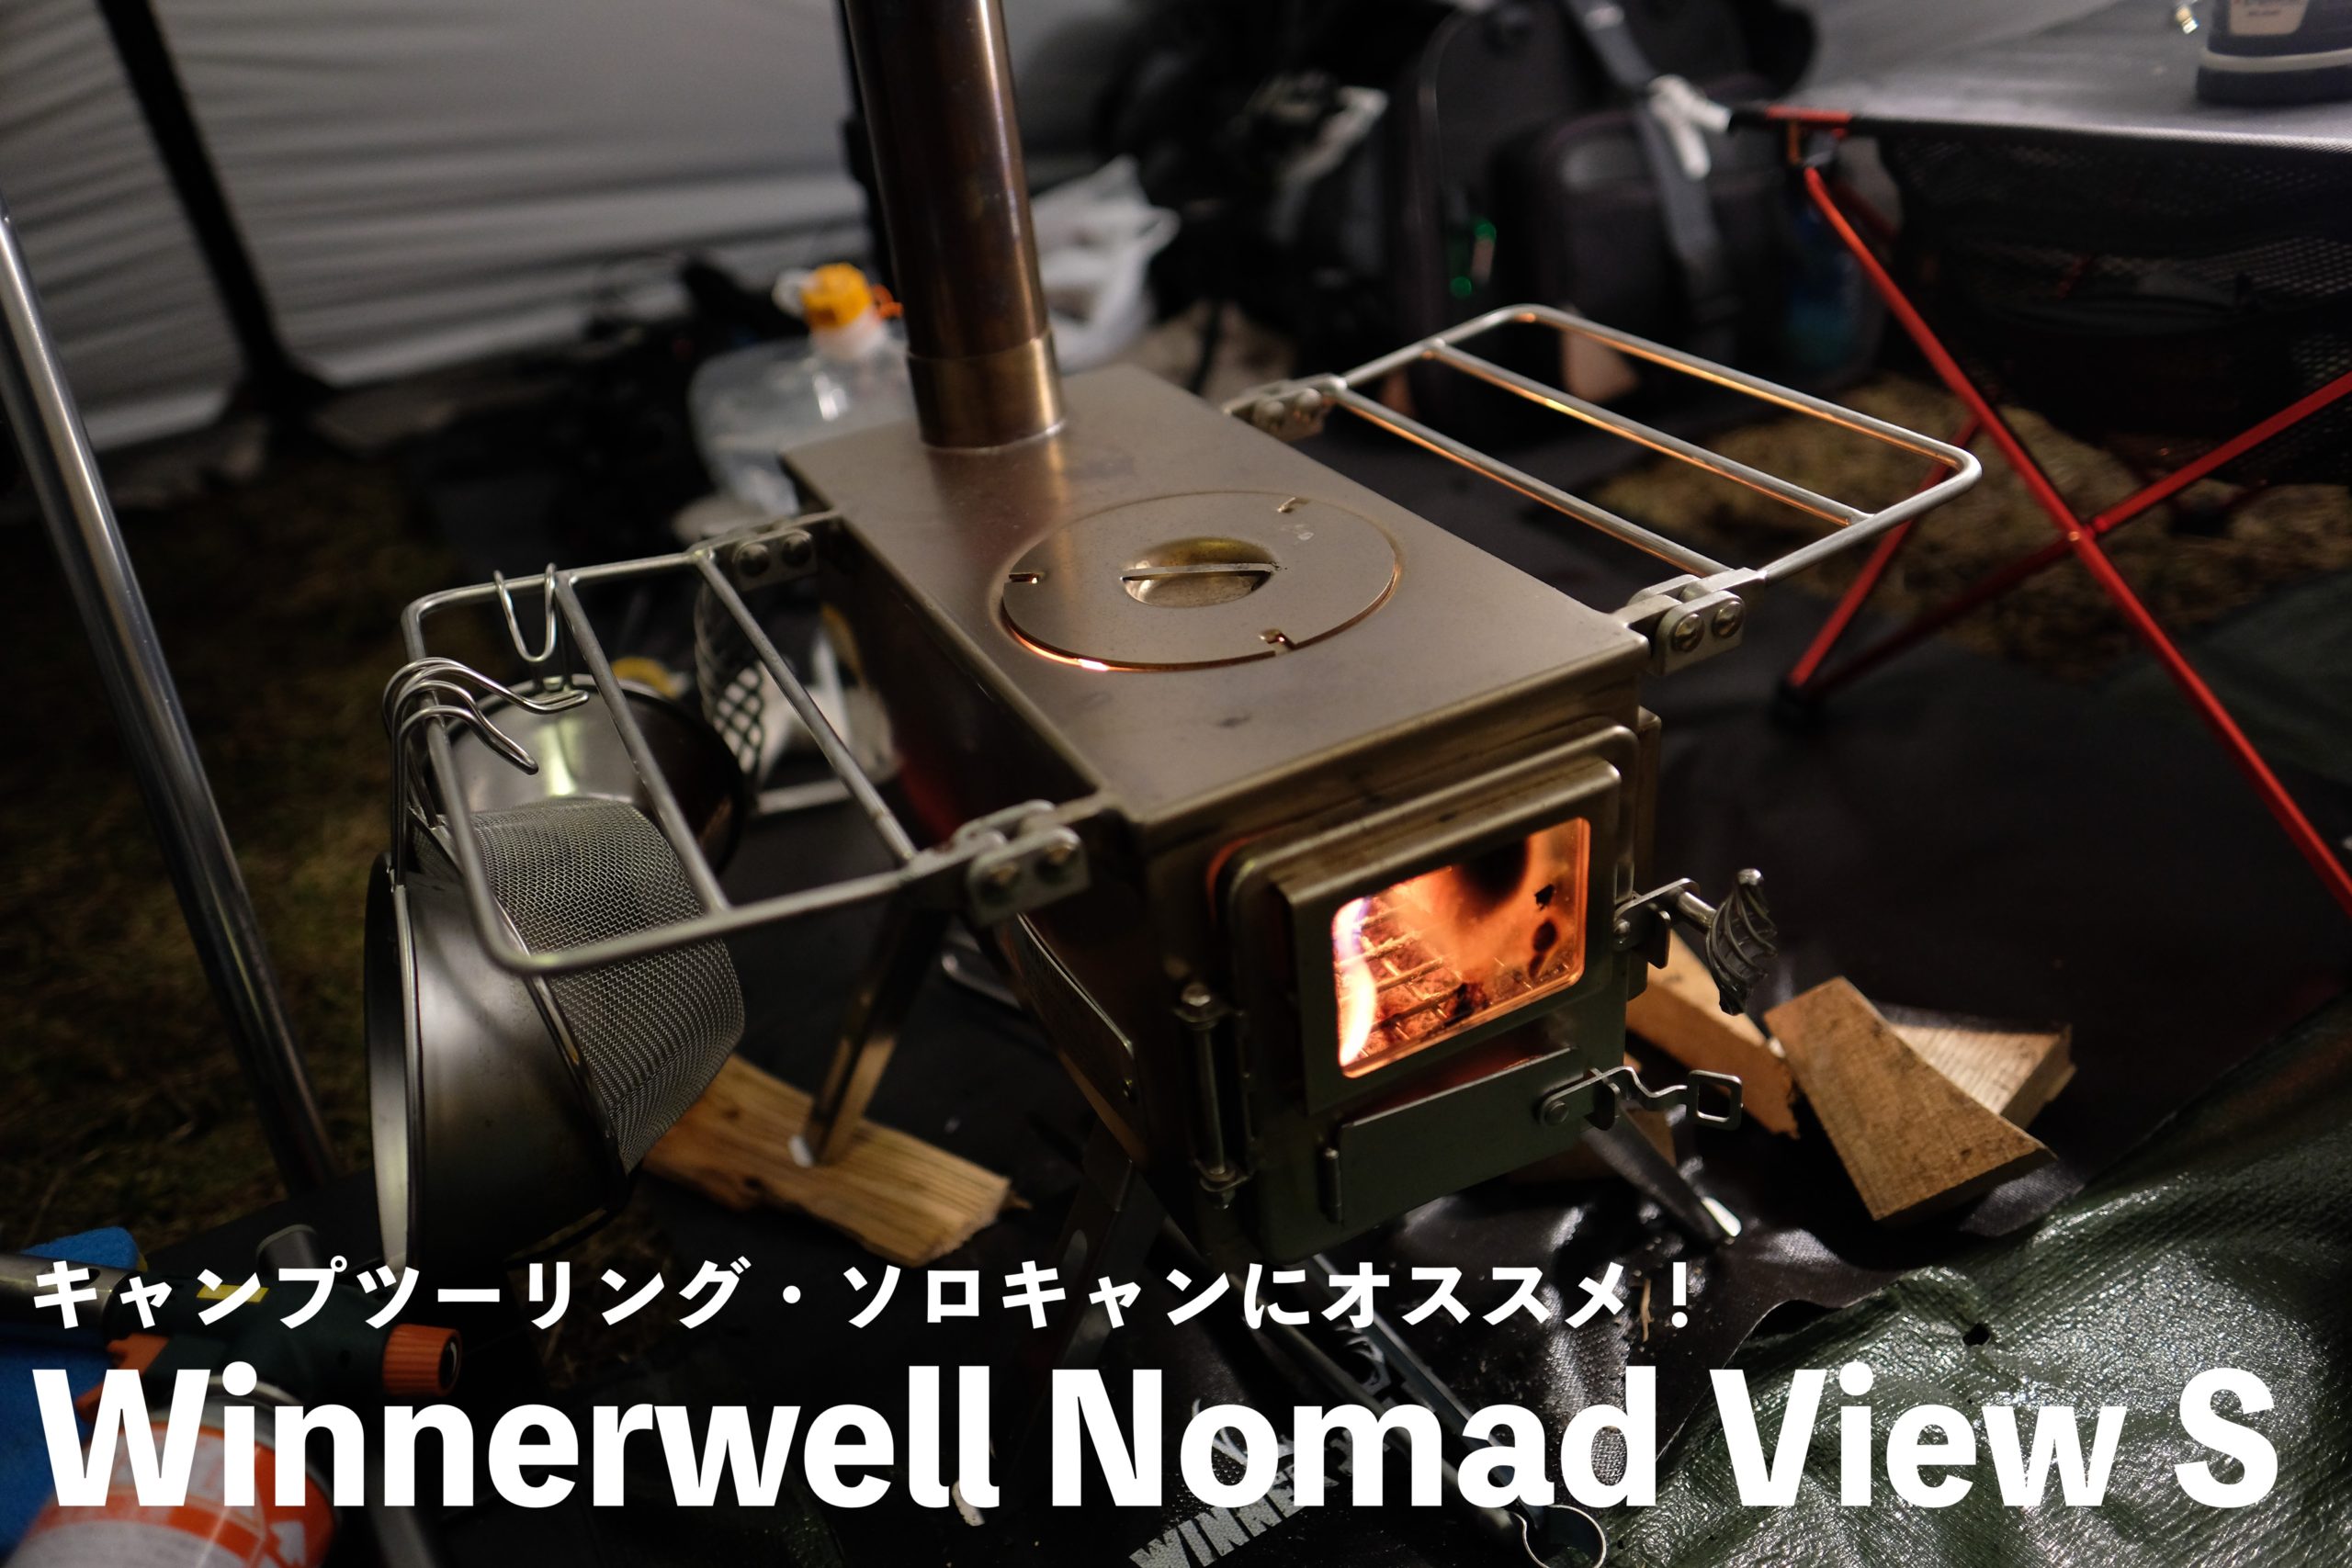 Winnerwell Nomad View S】コンパクトだけど本格的な薪ストーブ☆キャンプツーリングからソロキャンプにオススメ☆ |  ハレノチバイクブログ